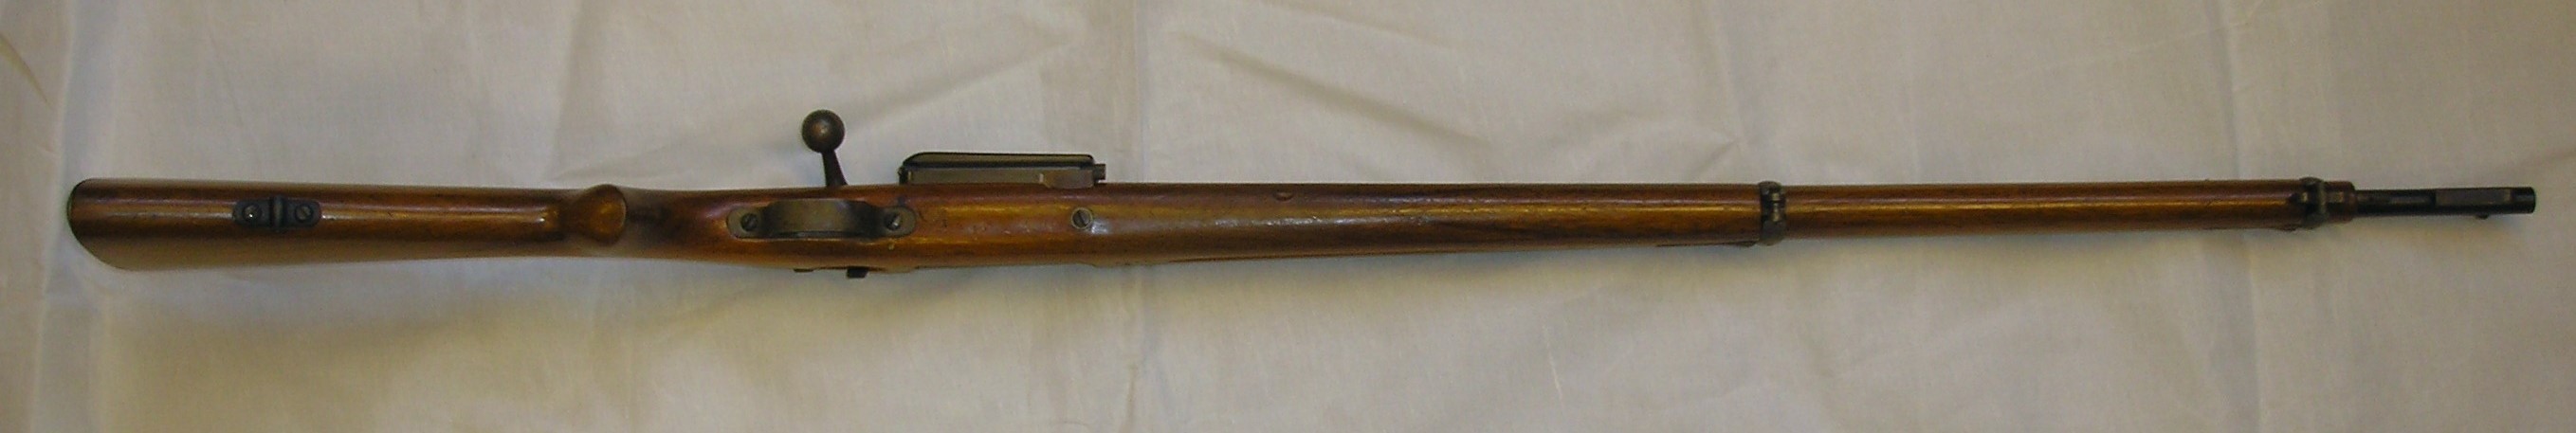 ./guns/rifle/bilder/Rifle-Kongsberg-Krag-M1894-1898-privat-325-3.JPG